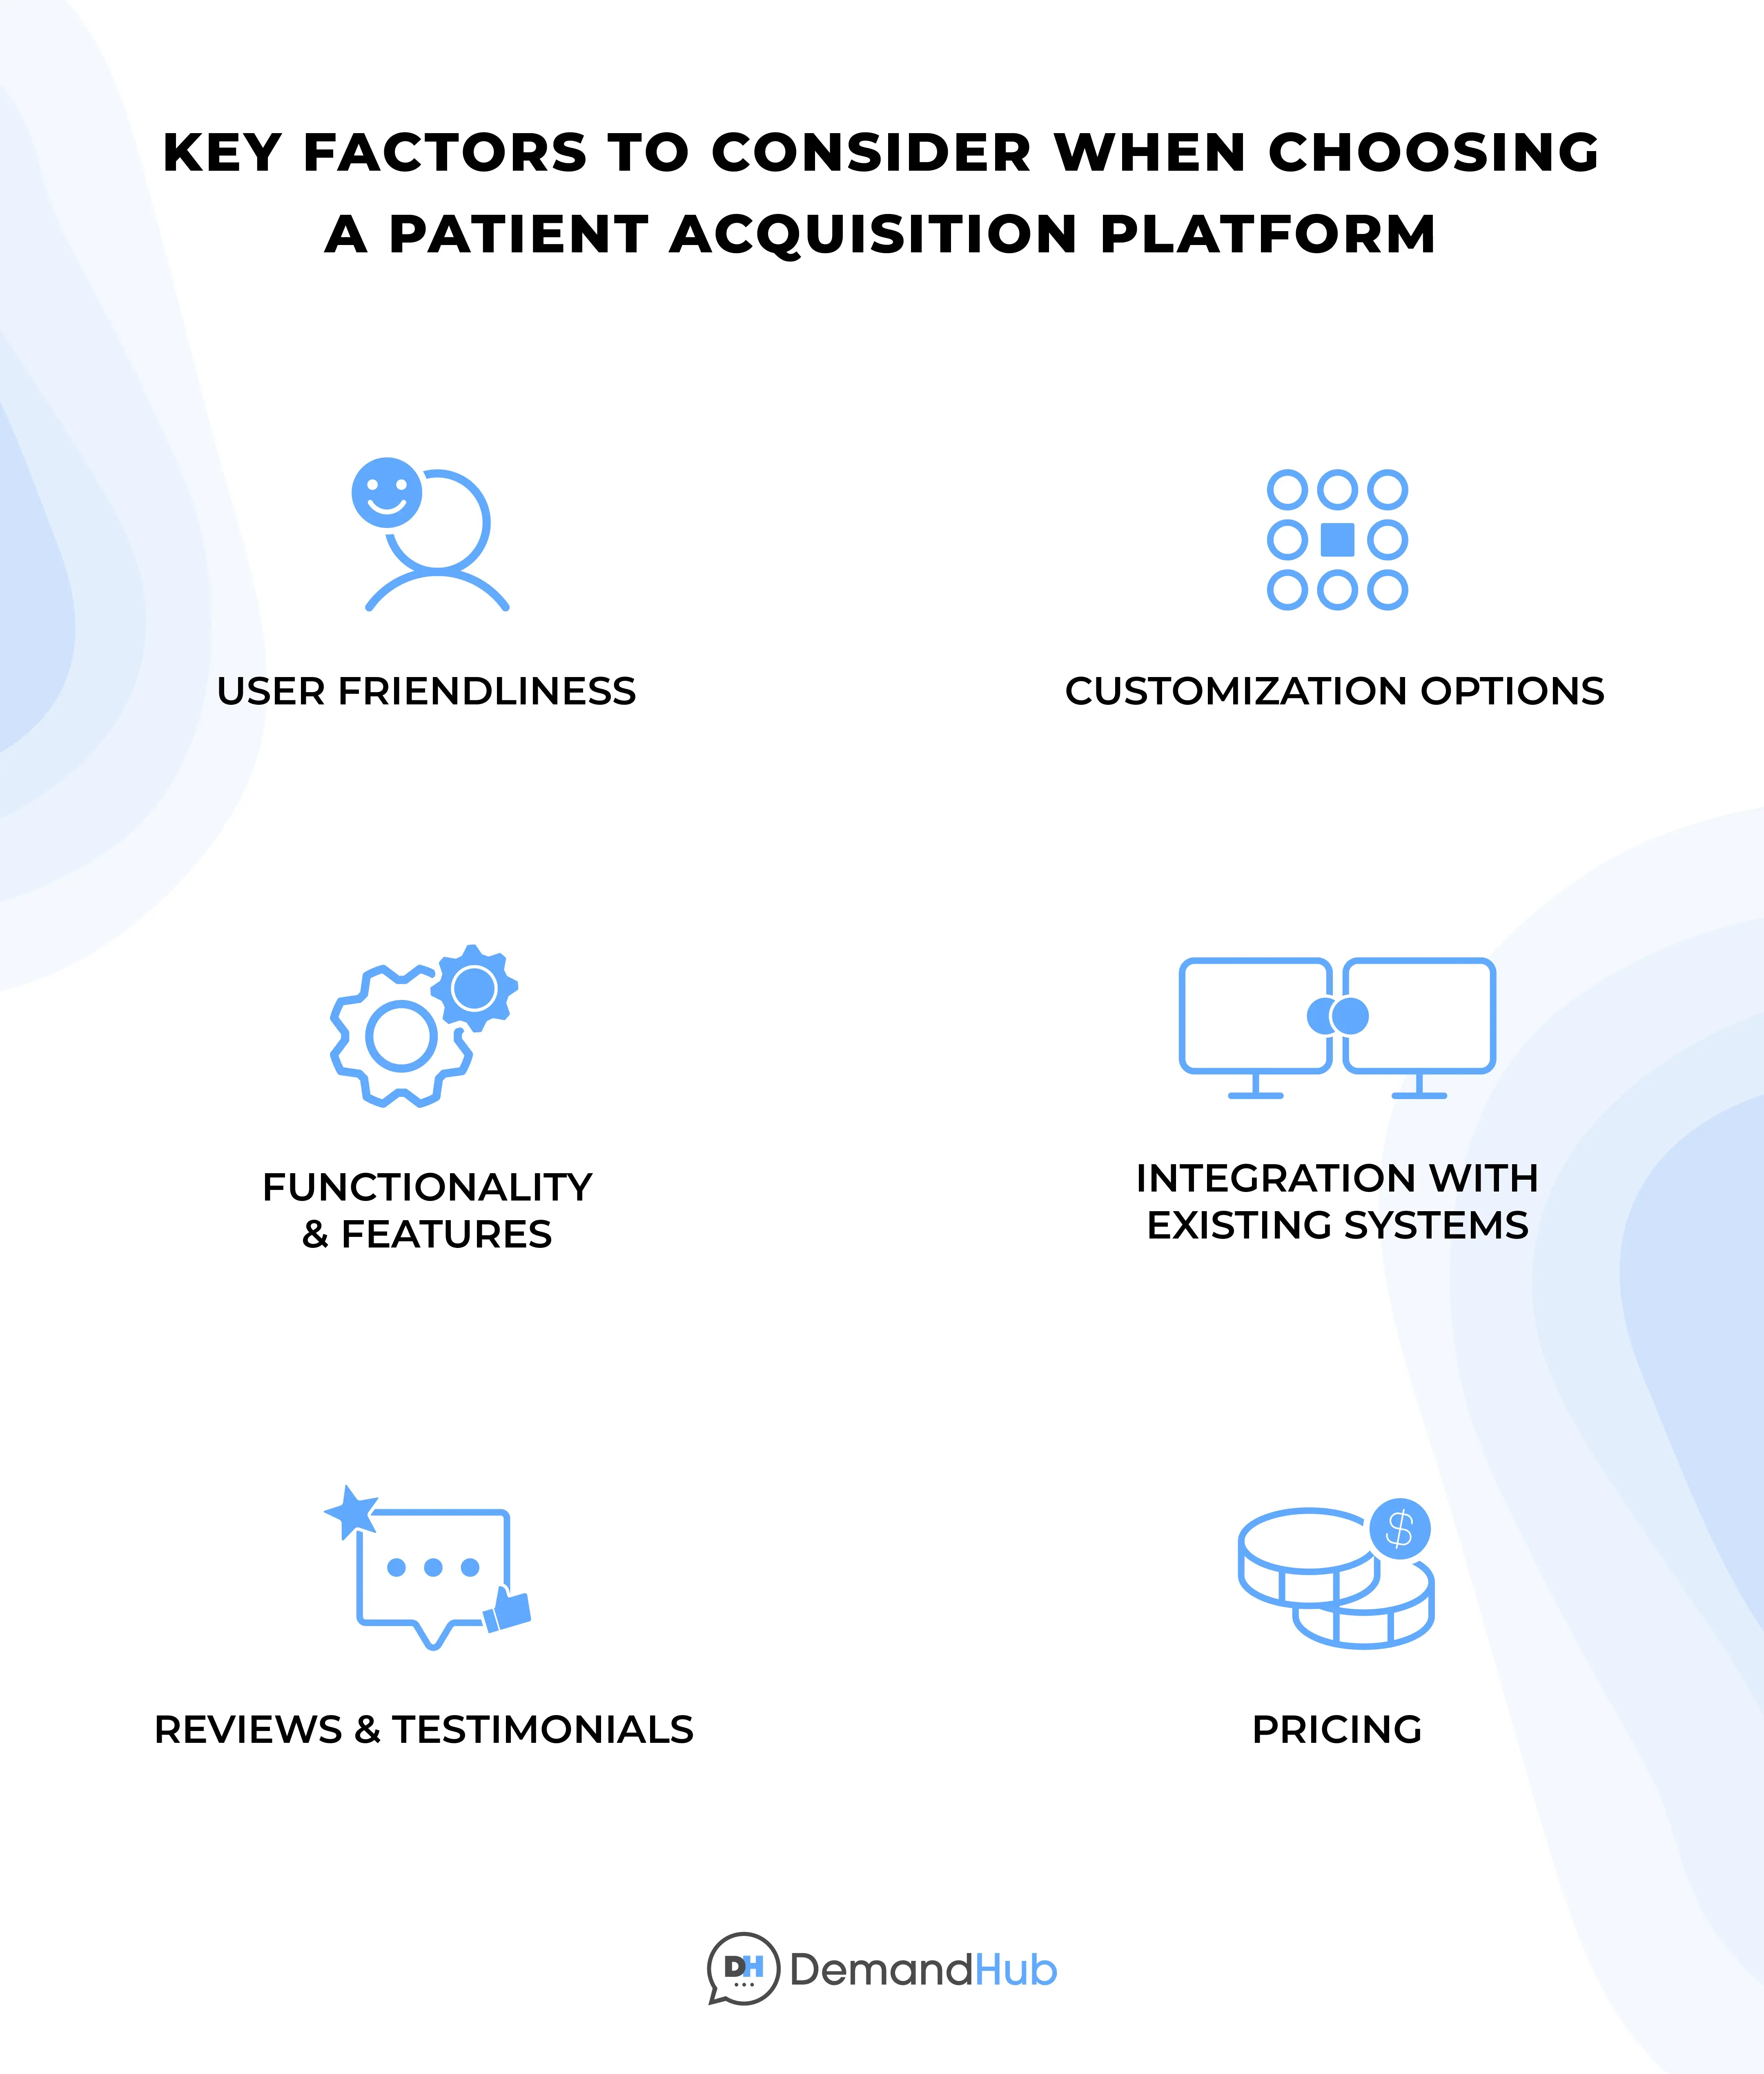 Key Factors to Consider When Choosing a Patient Acquisition Platform